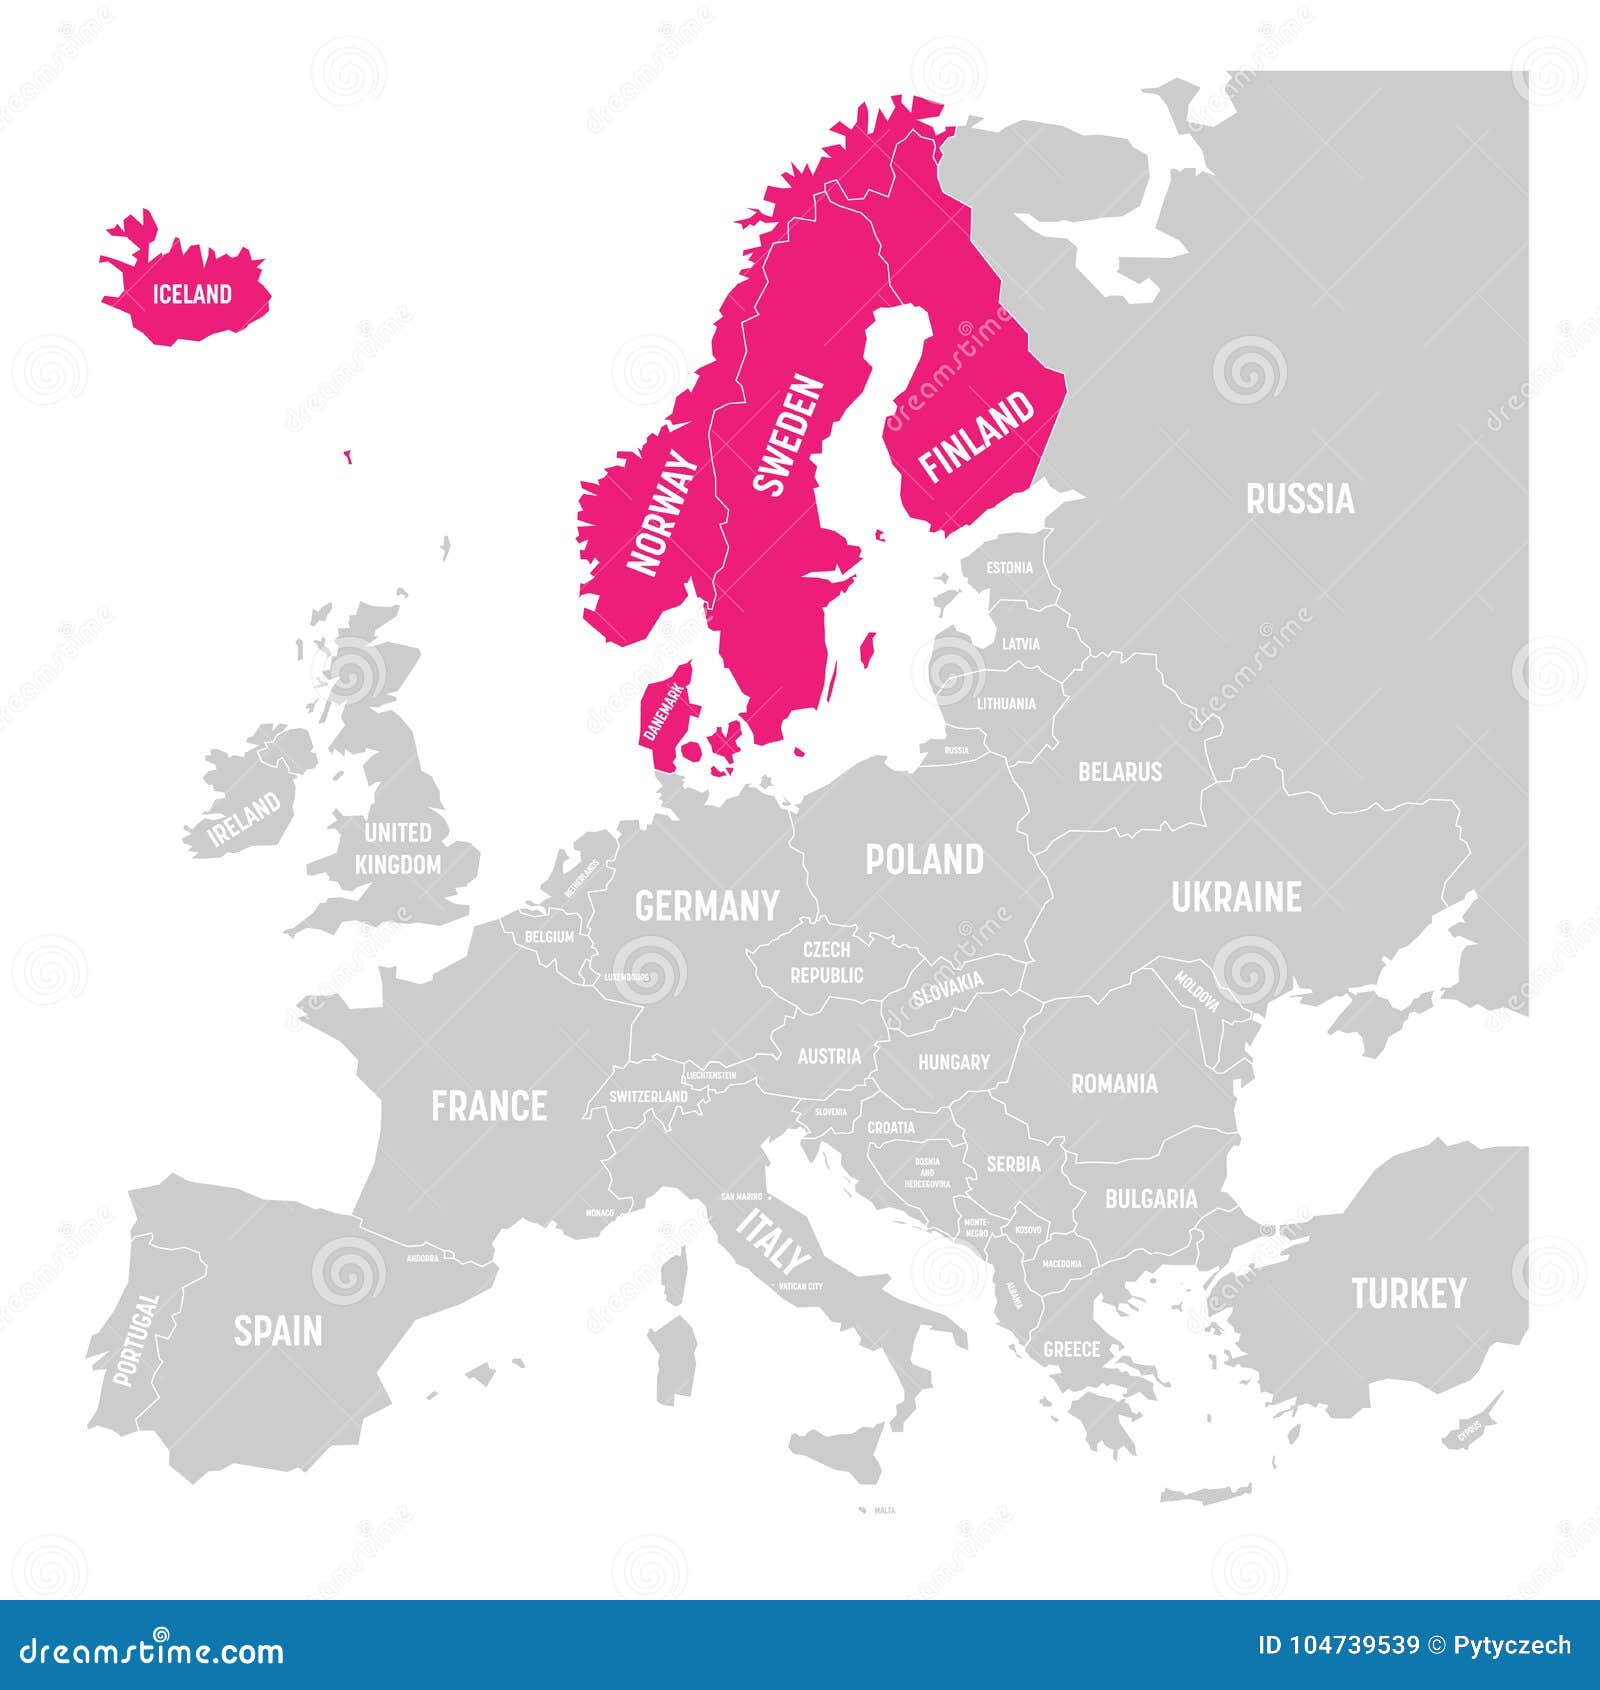 Dinamarca e Noruega: quando ir, e quando custa